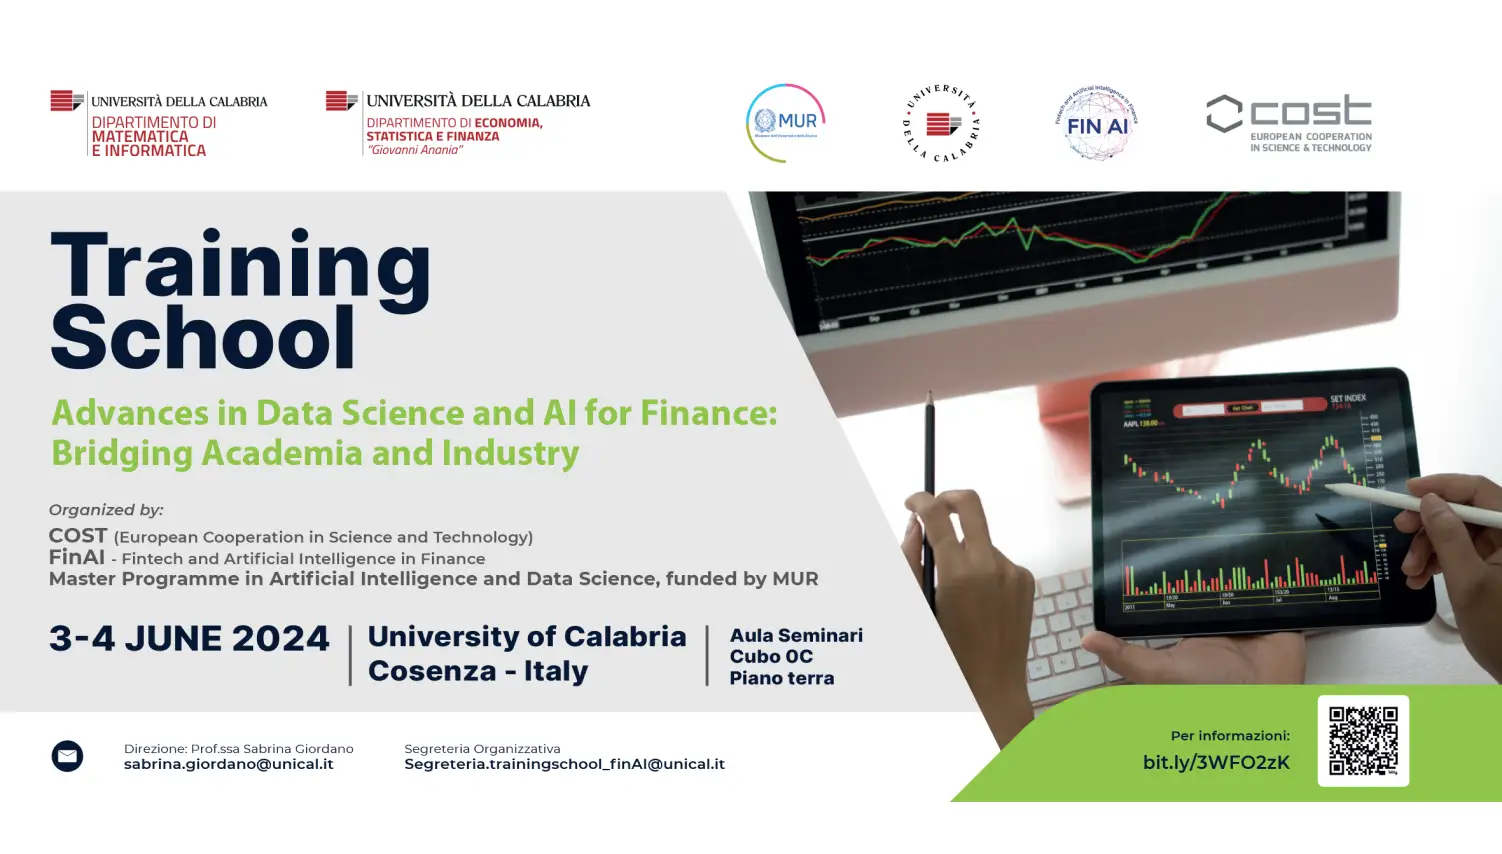 Invito Training school 2024 - Advances in Data Science and AI for Finance